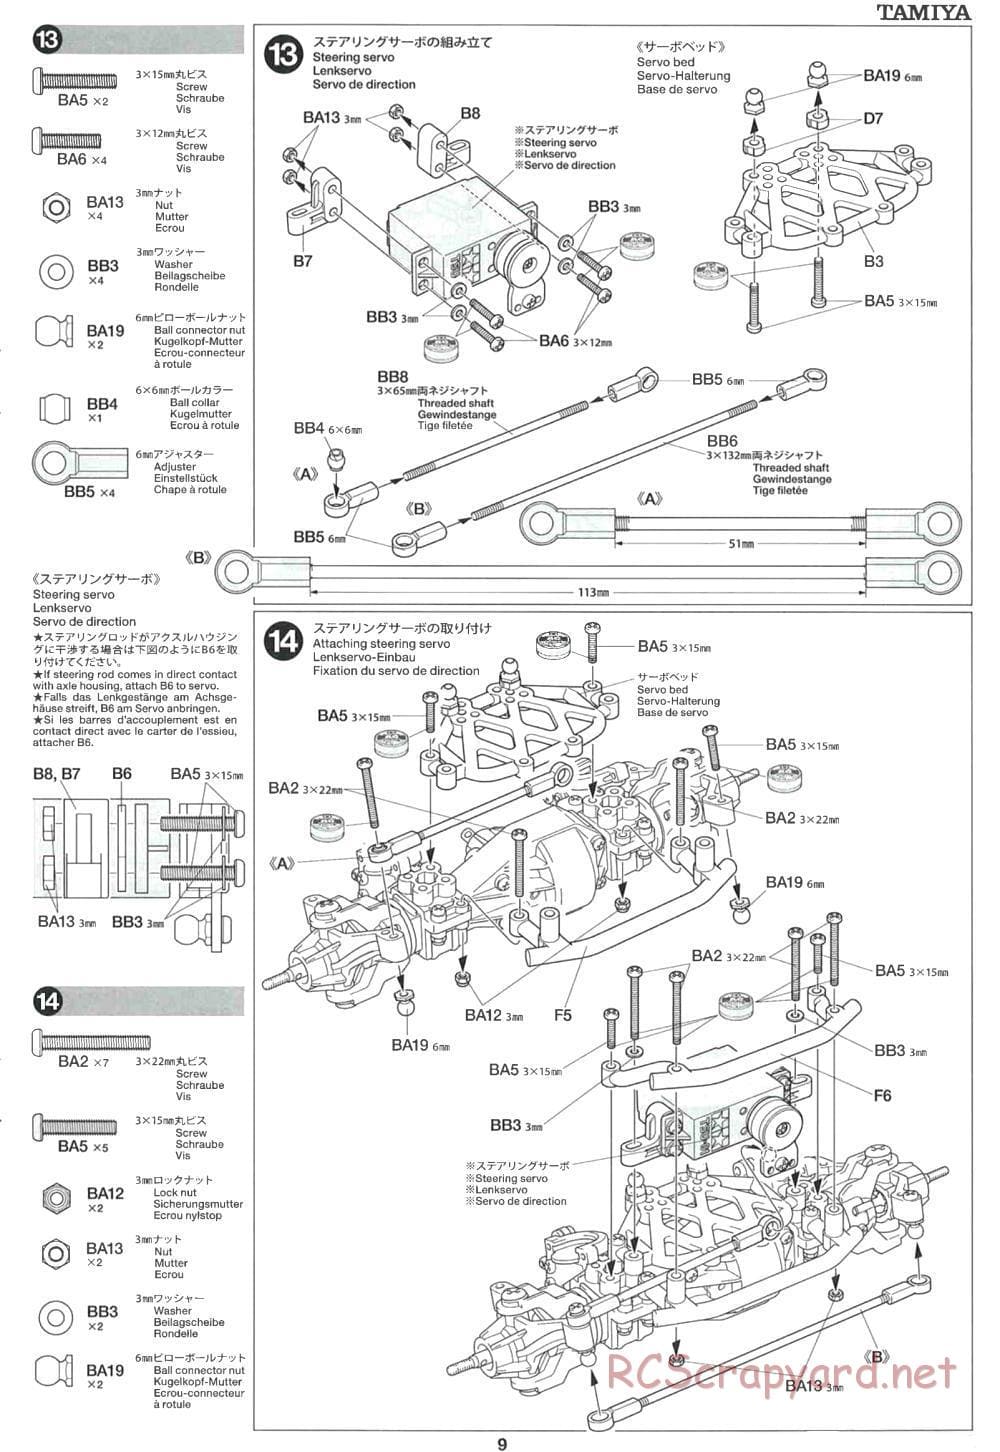 Tamiya - CR-01 Chassis - Manual - Page 9